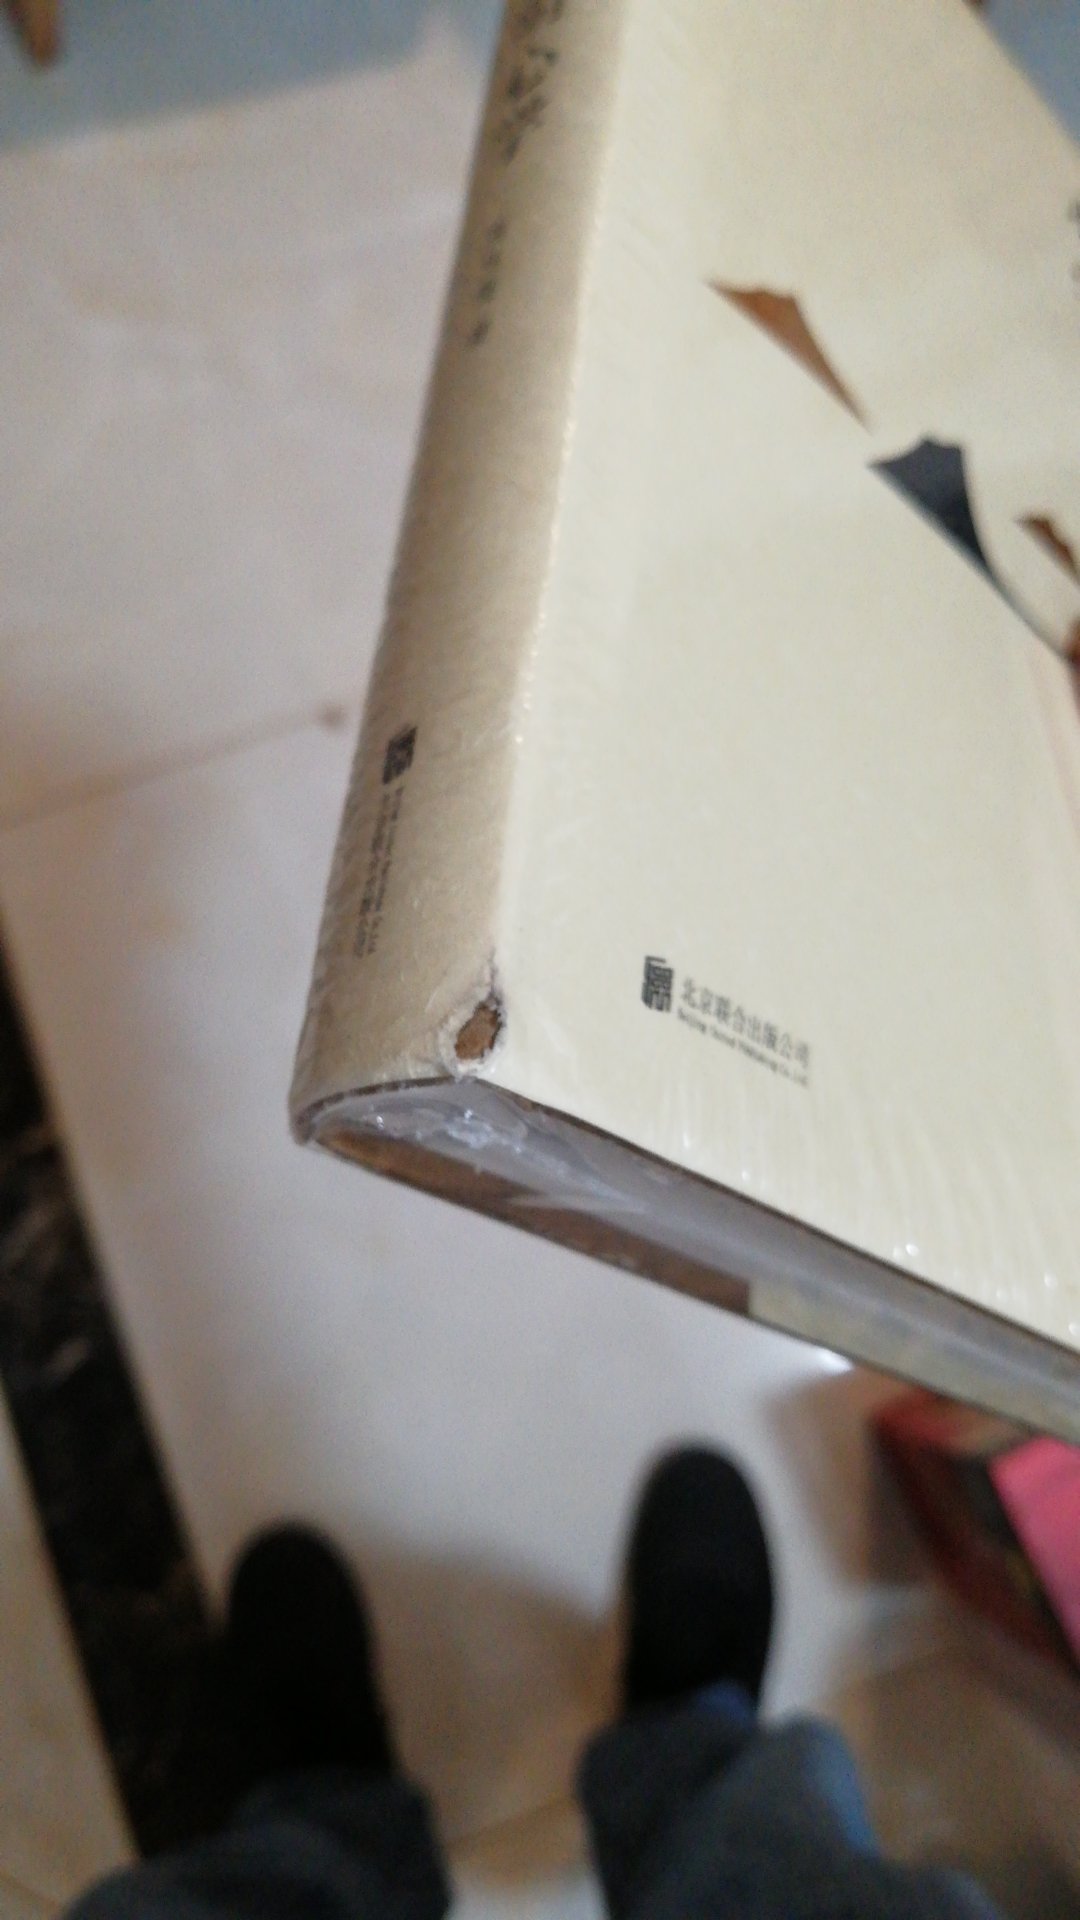 这次书籍损坏的严重啊，真是受不了。弄点包装就这么难吗？？？？？？？？？